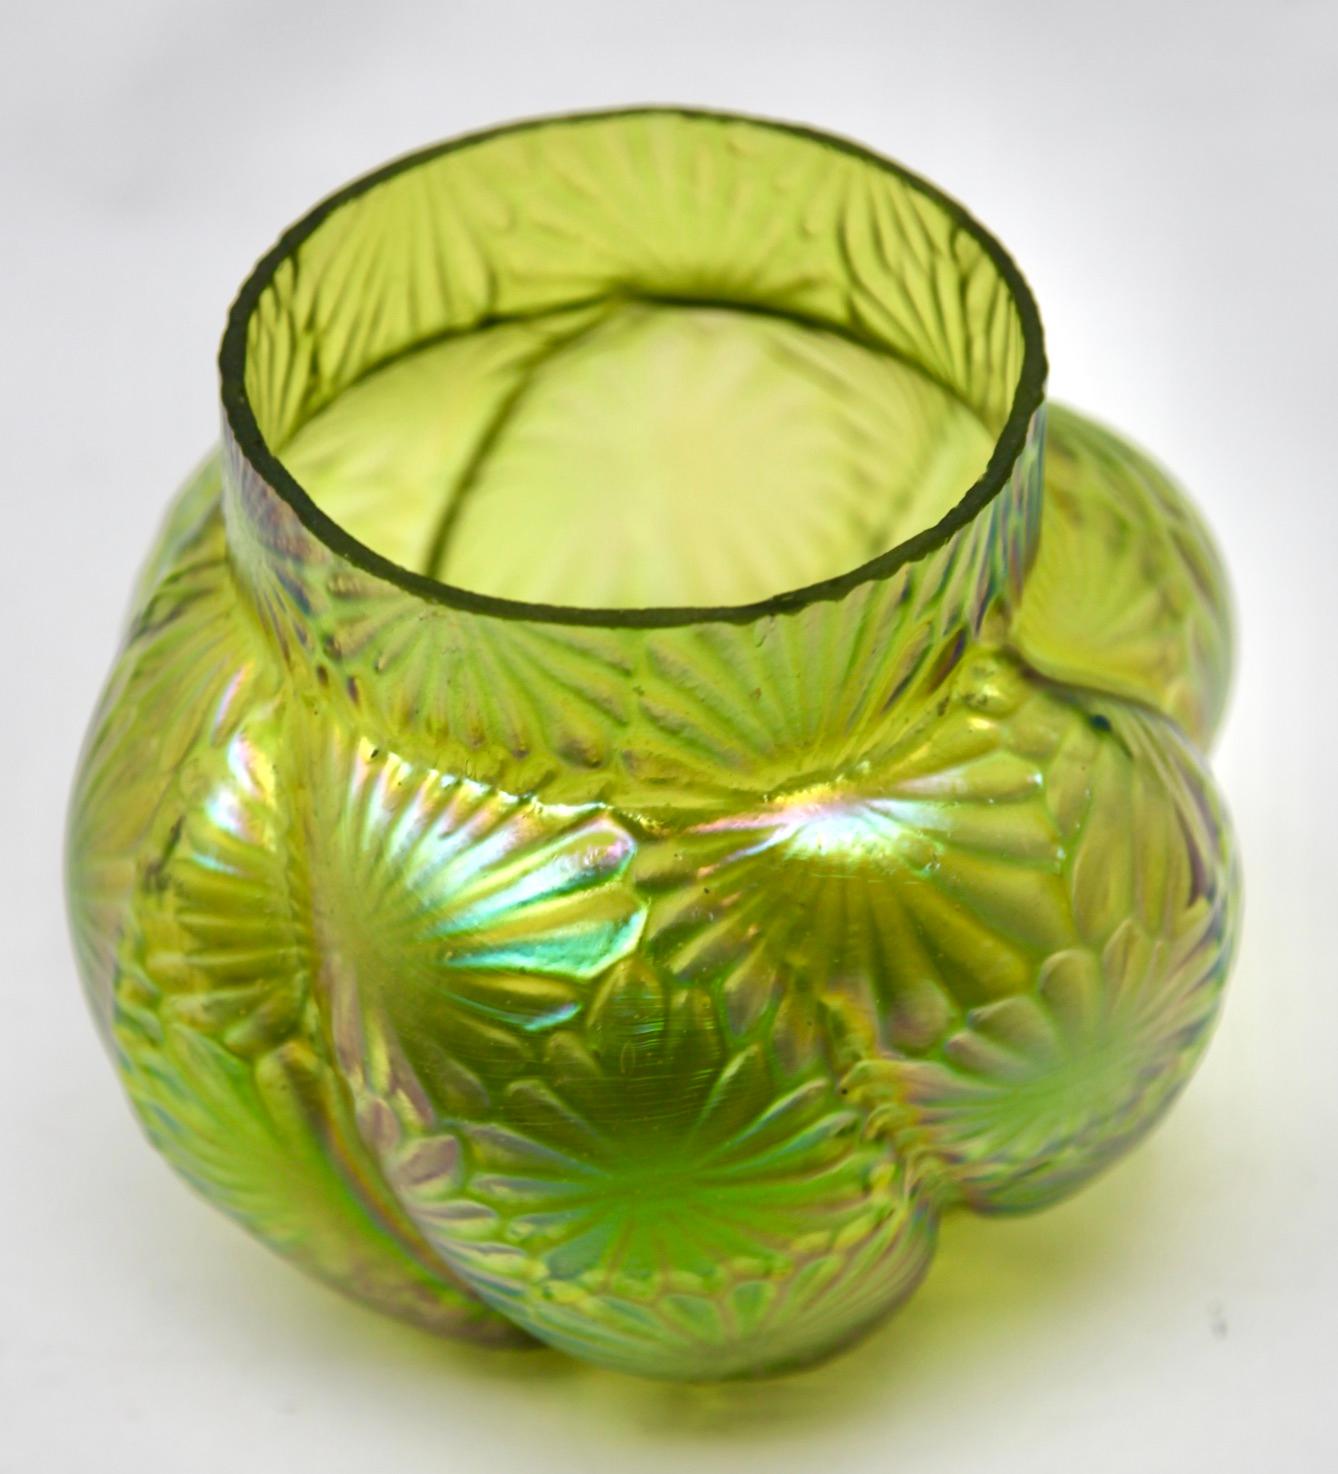 20th Century Art Nouveau iridescent glass Pique Fleurs' vase by Loetz' with Grille For Sale